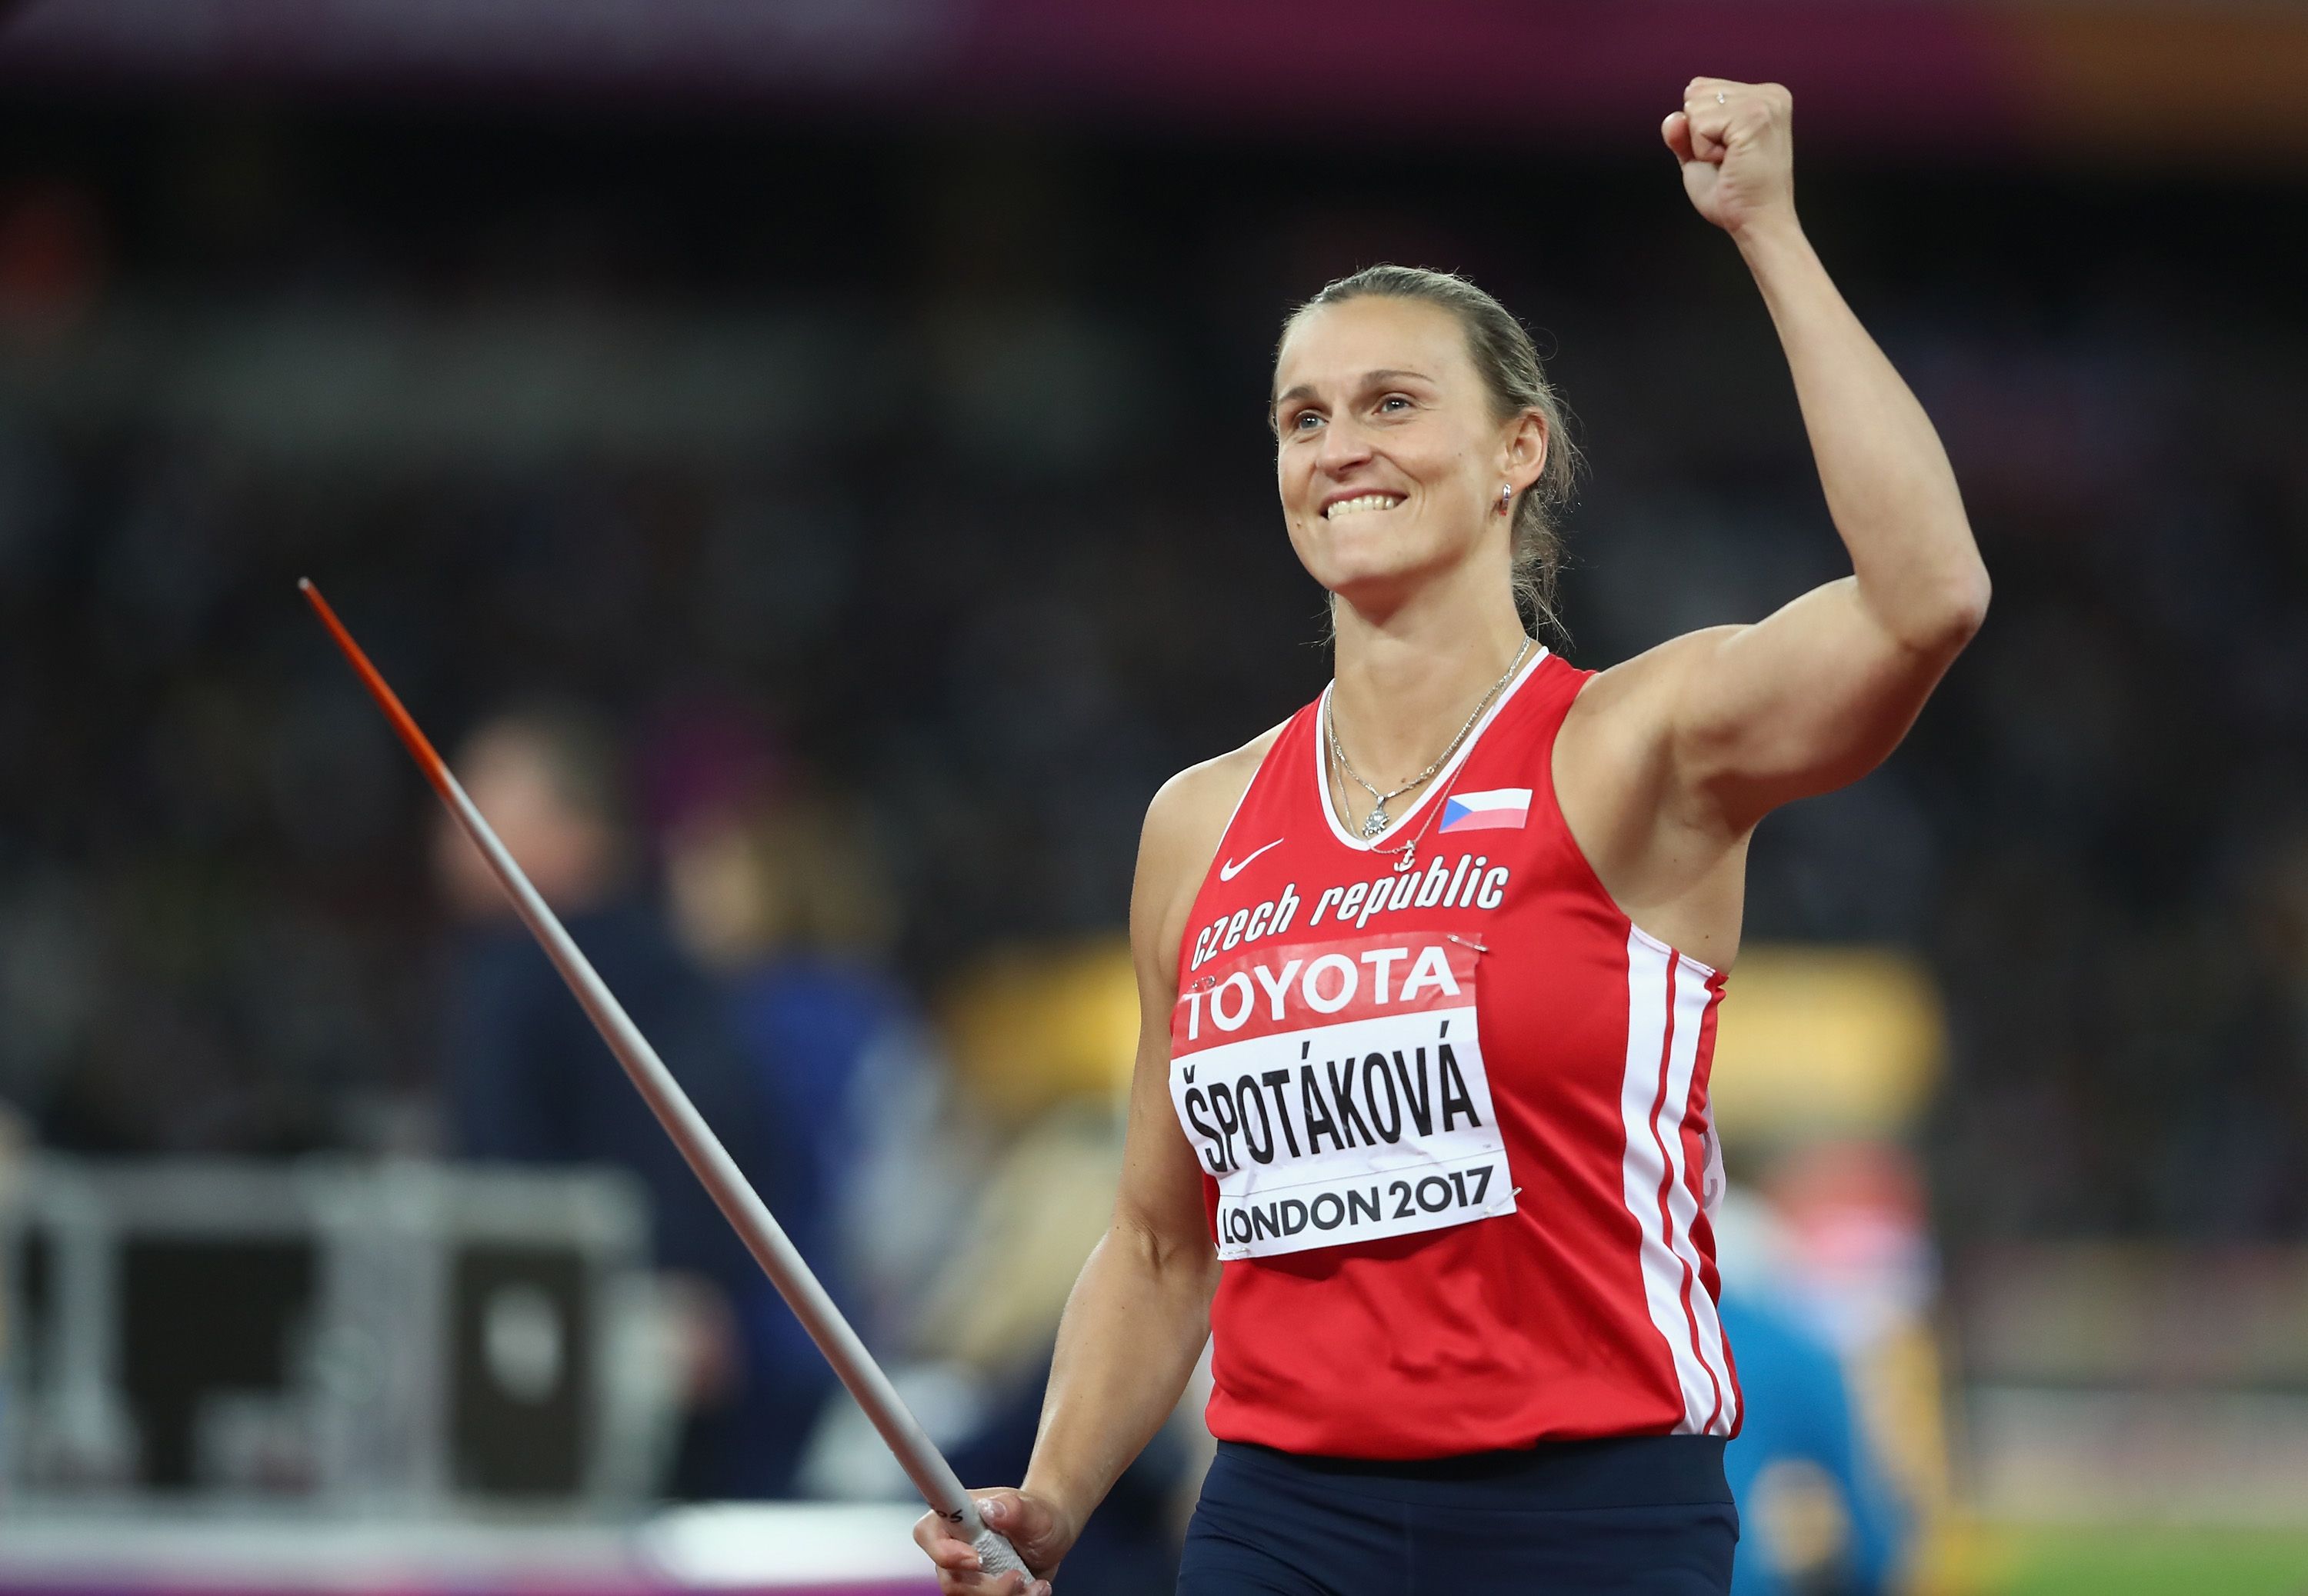 Barbora Spotakova at the 2017 World Championships in London